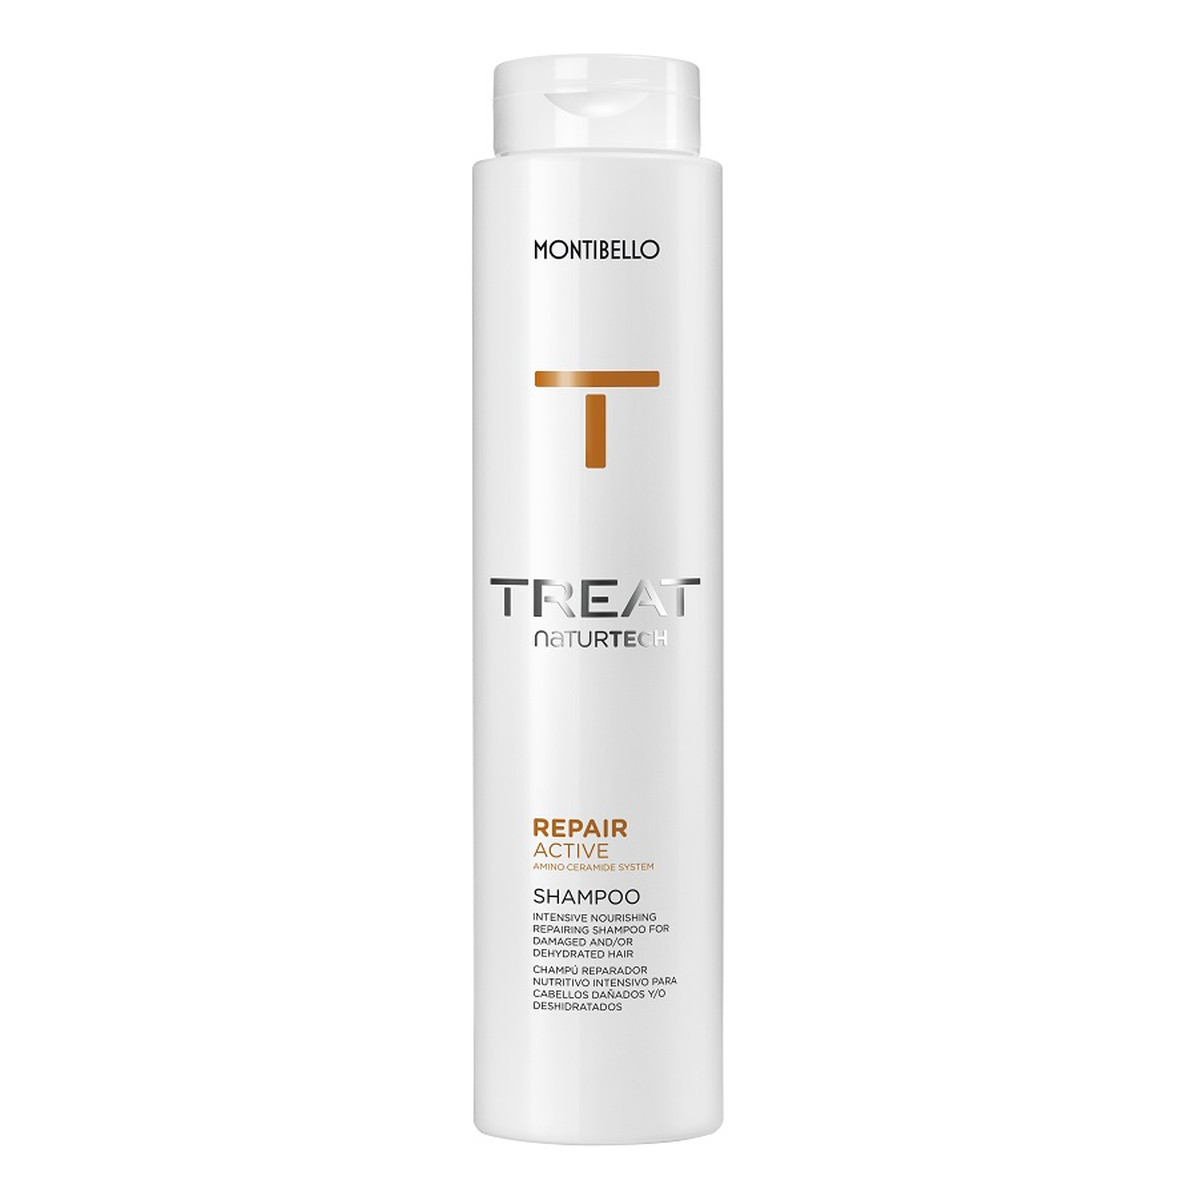 Montibello Treat naturtech repair active shampoo odbudowujący szampon do włosów zniszczonych 300ml